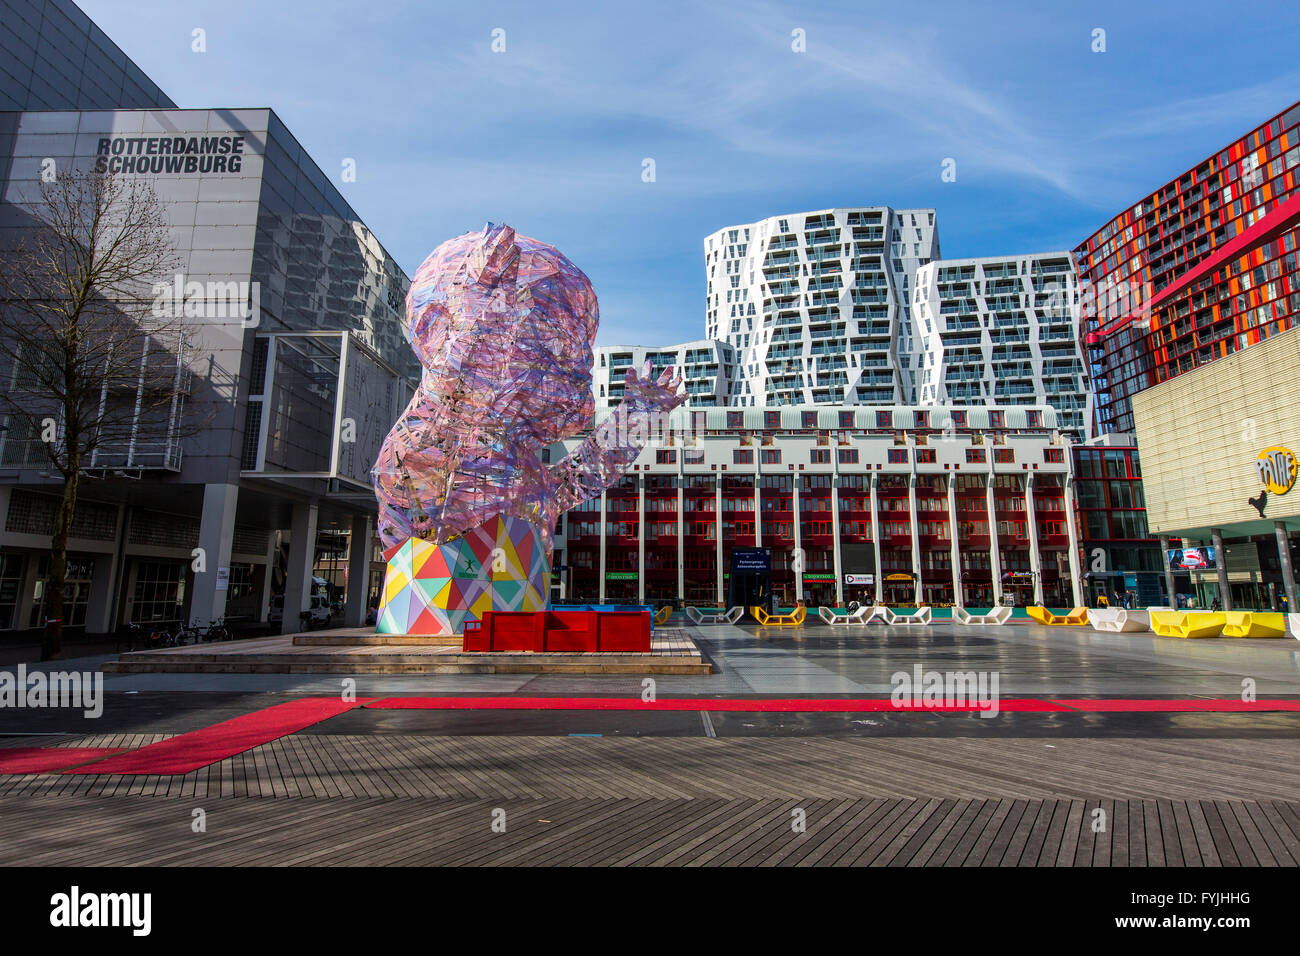 Innenstadt, Schouwburgplein, Platz im Zentrum Stadt mit verschiedenen Kulturinstitutionen und Kunstinstallationen in Rotterdam Stockfoto